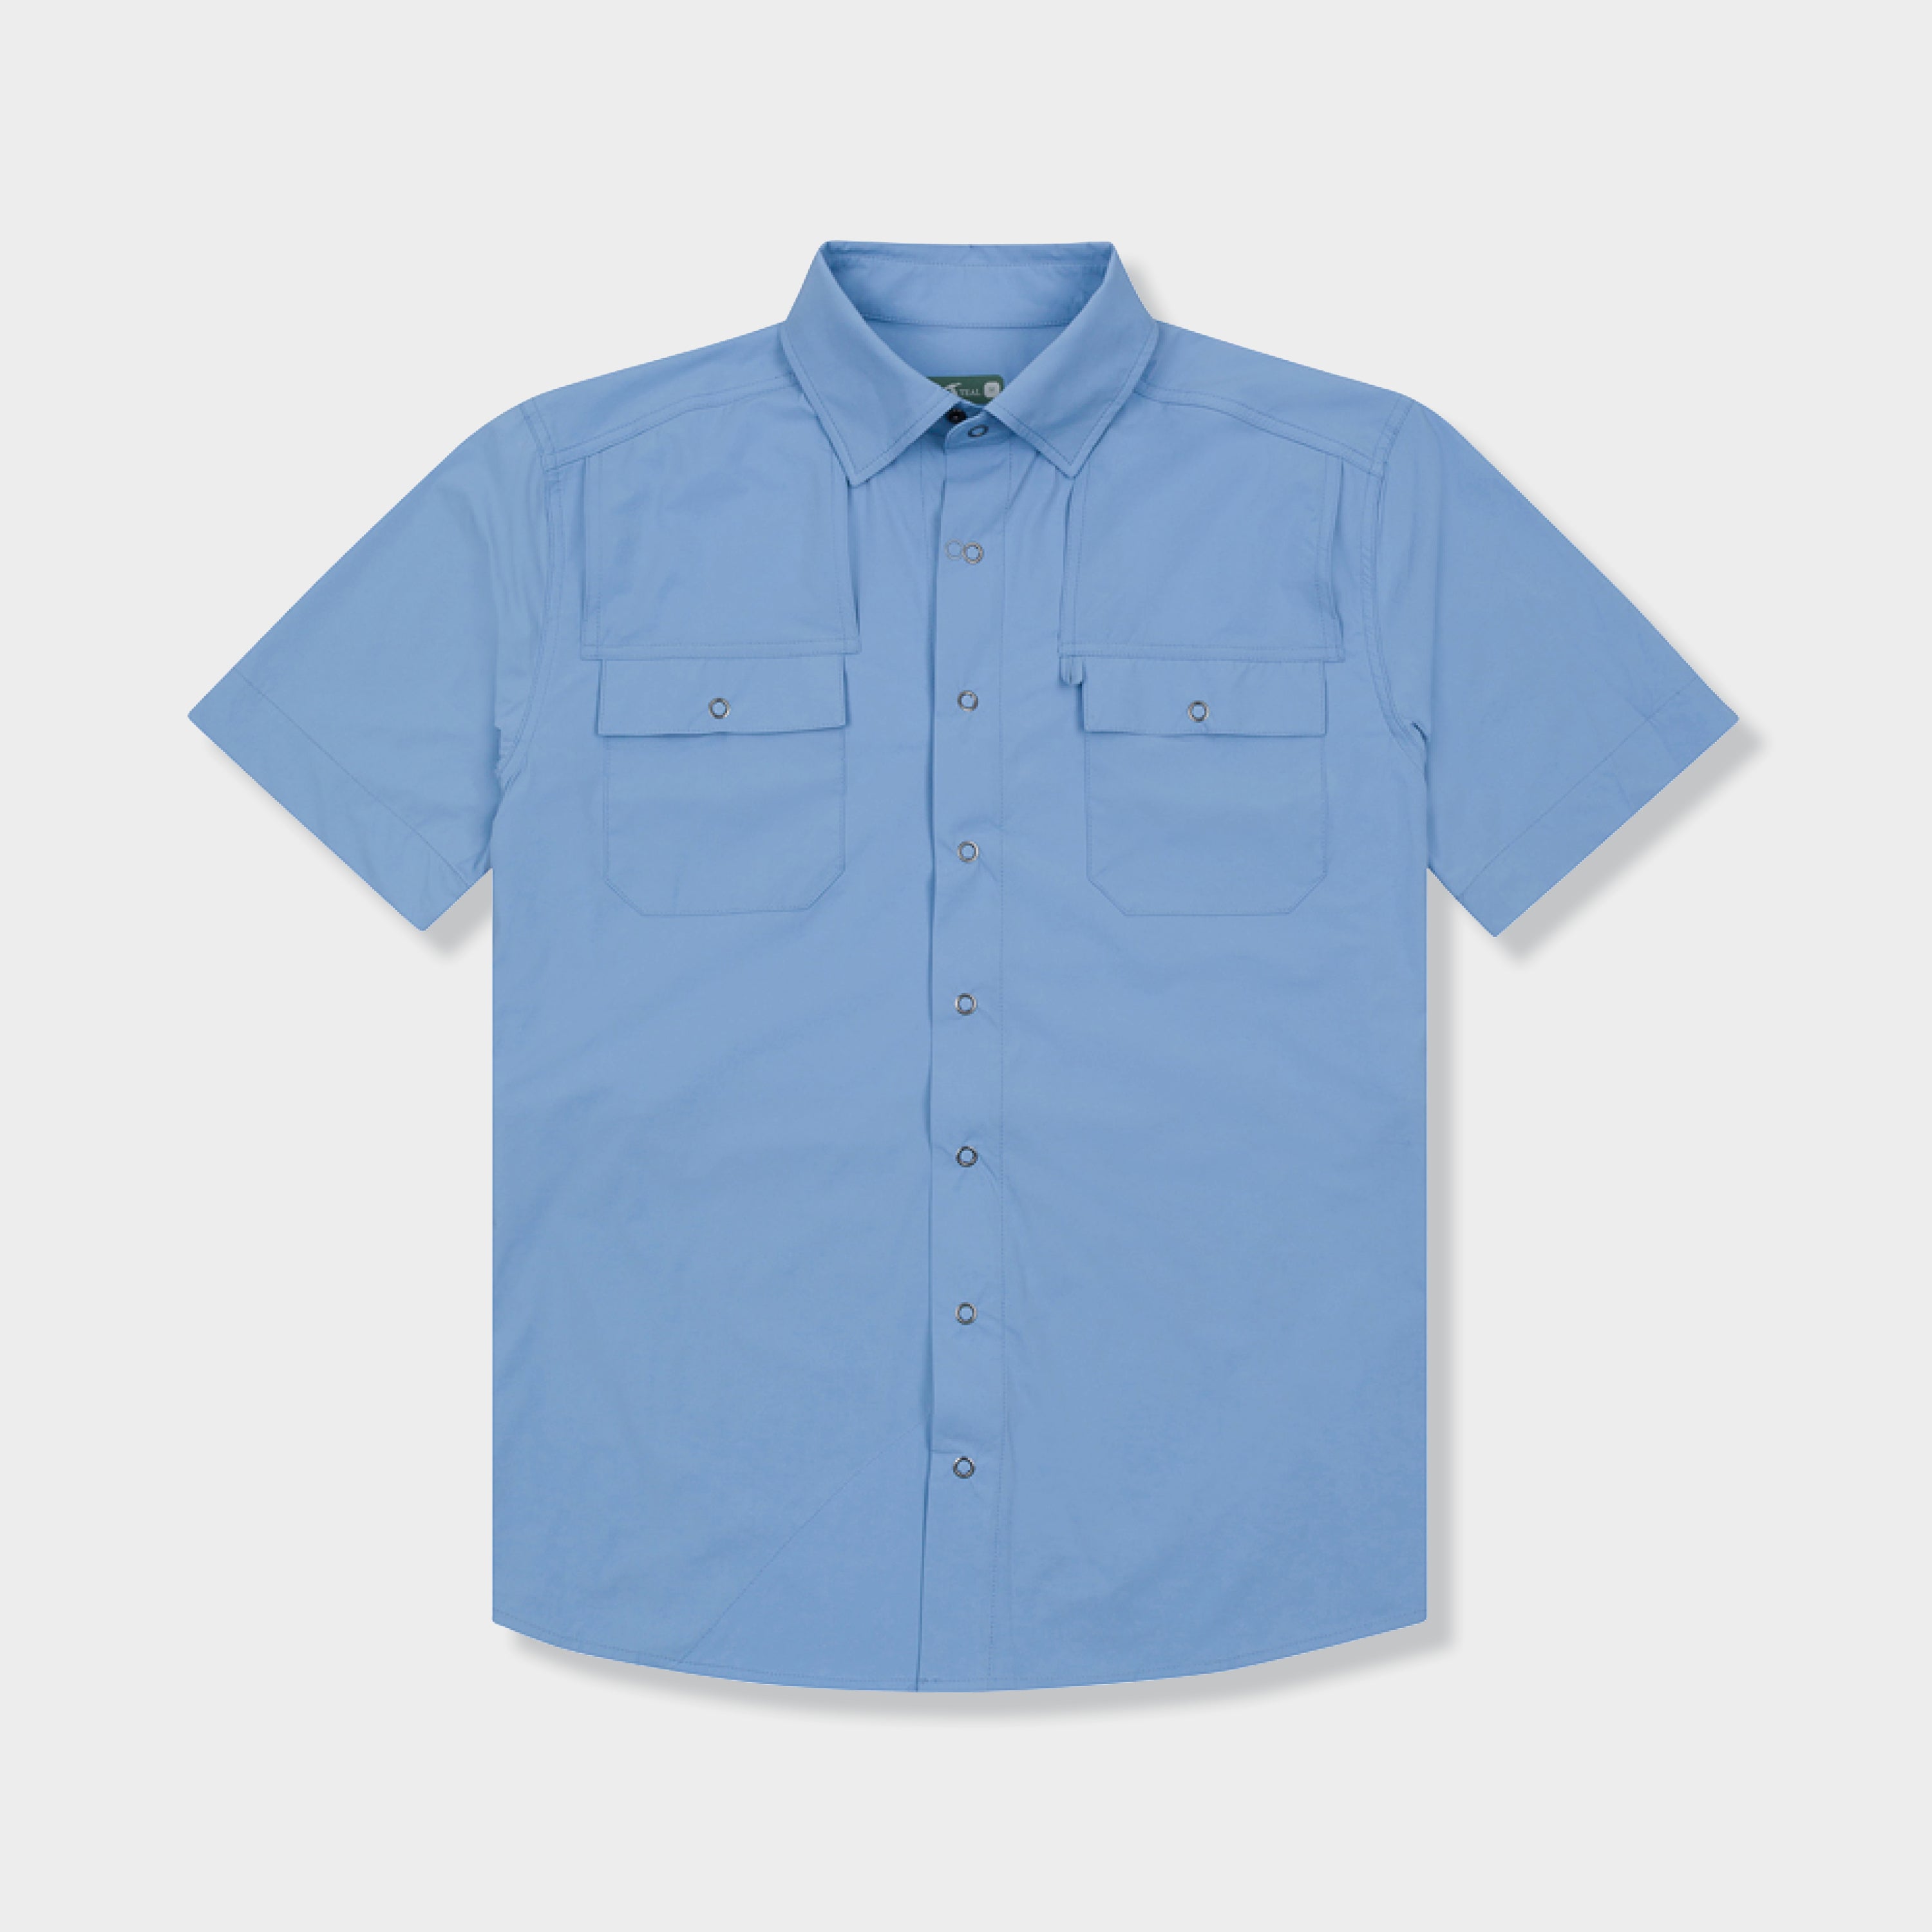 mens blue short sleeve sport shirt